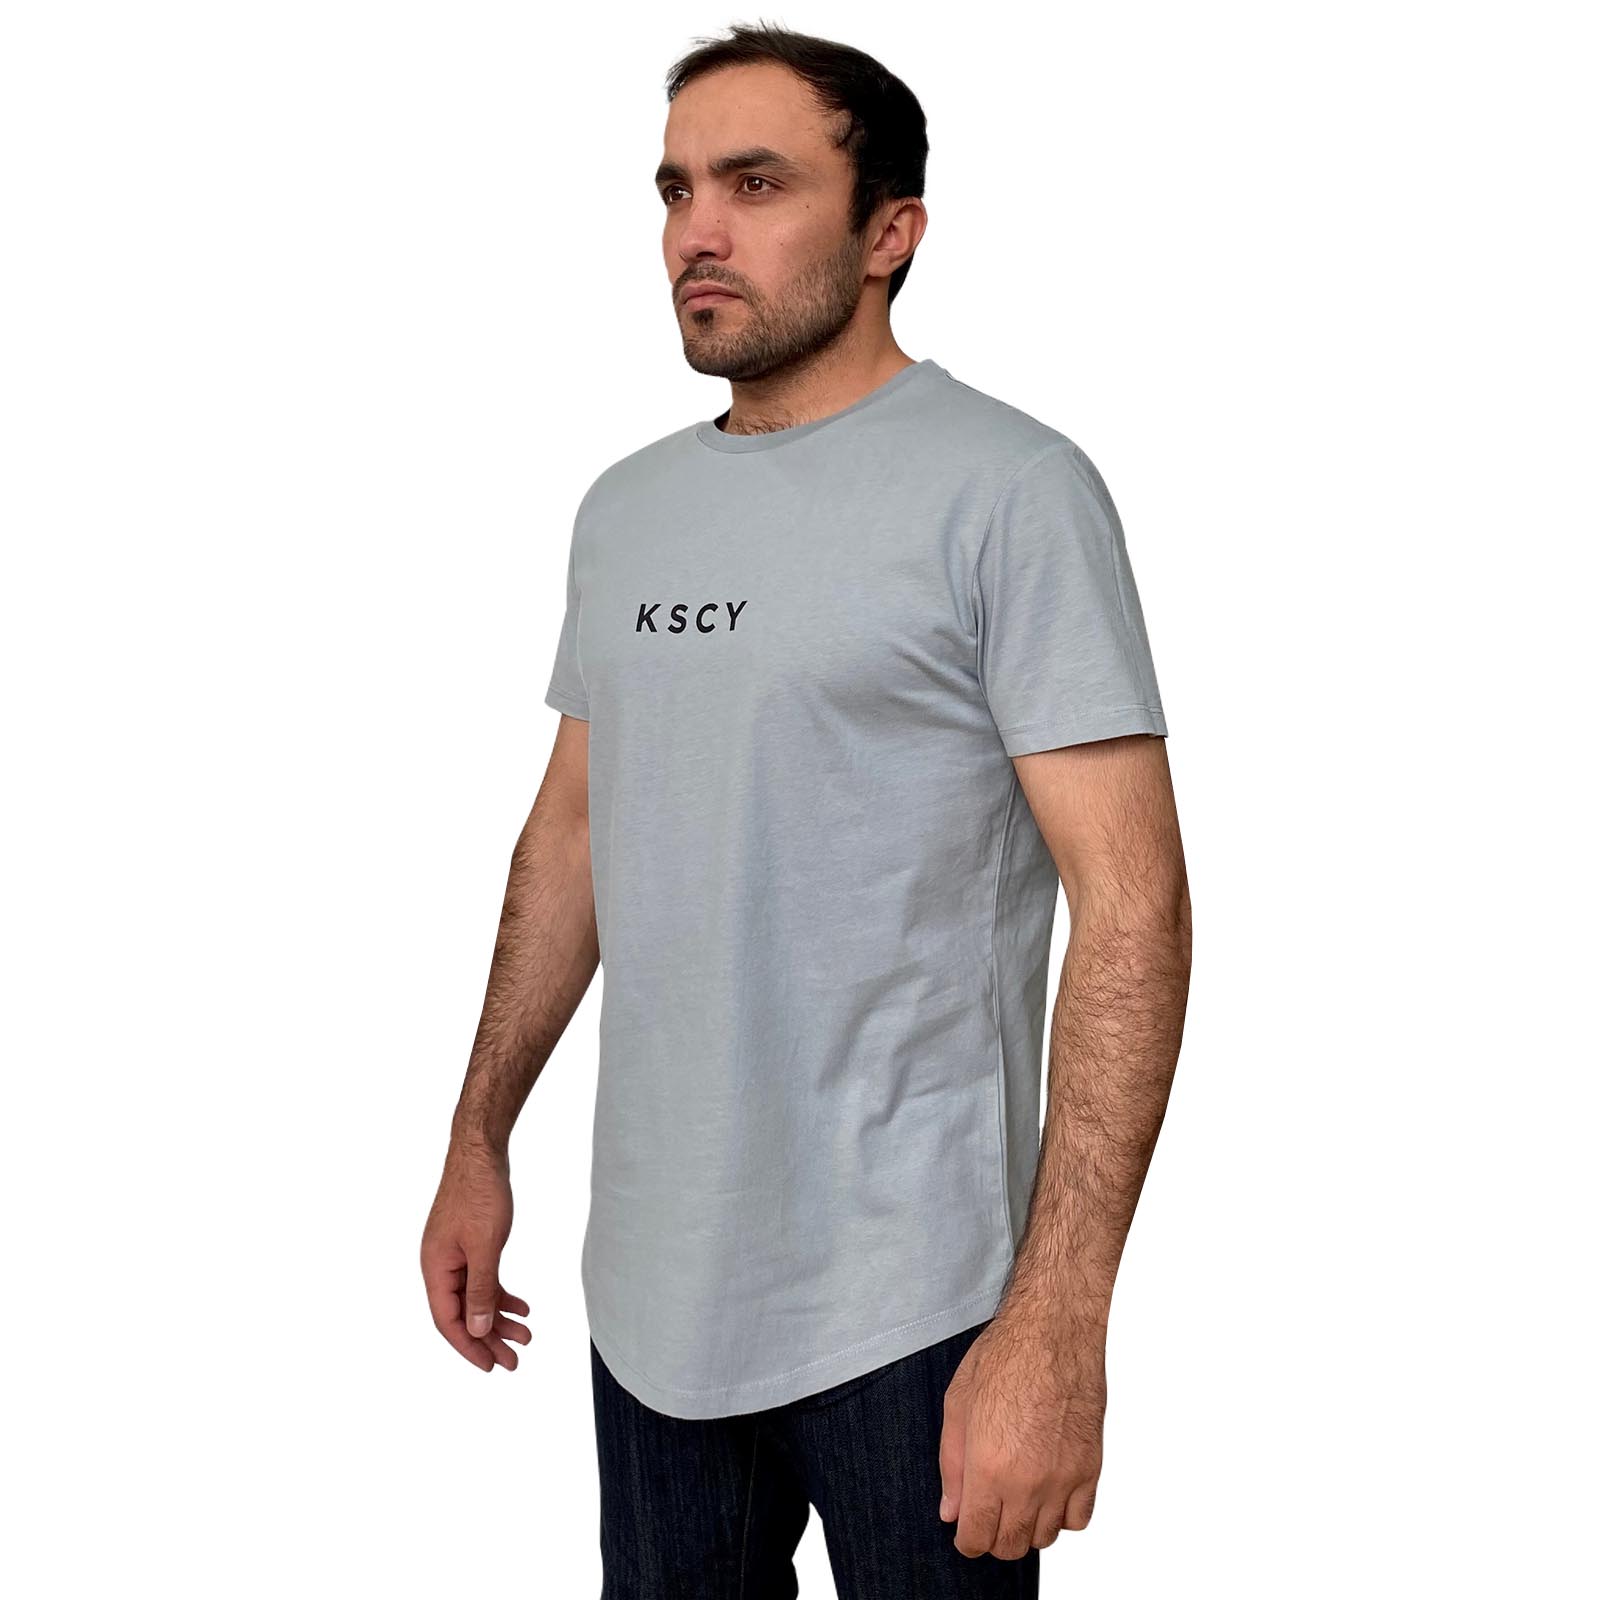 Купить в магазине мужскую брендовую футболку KSCY